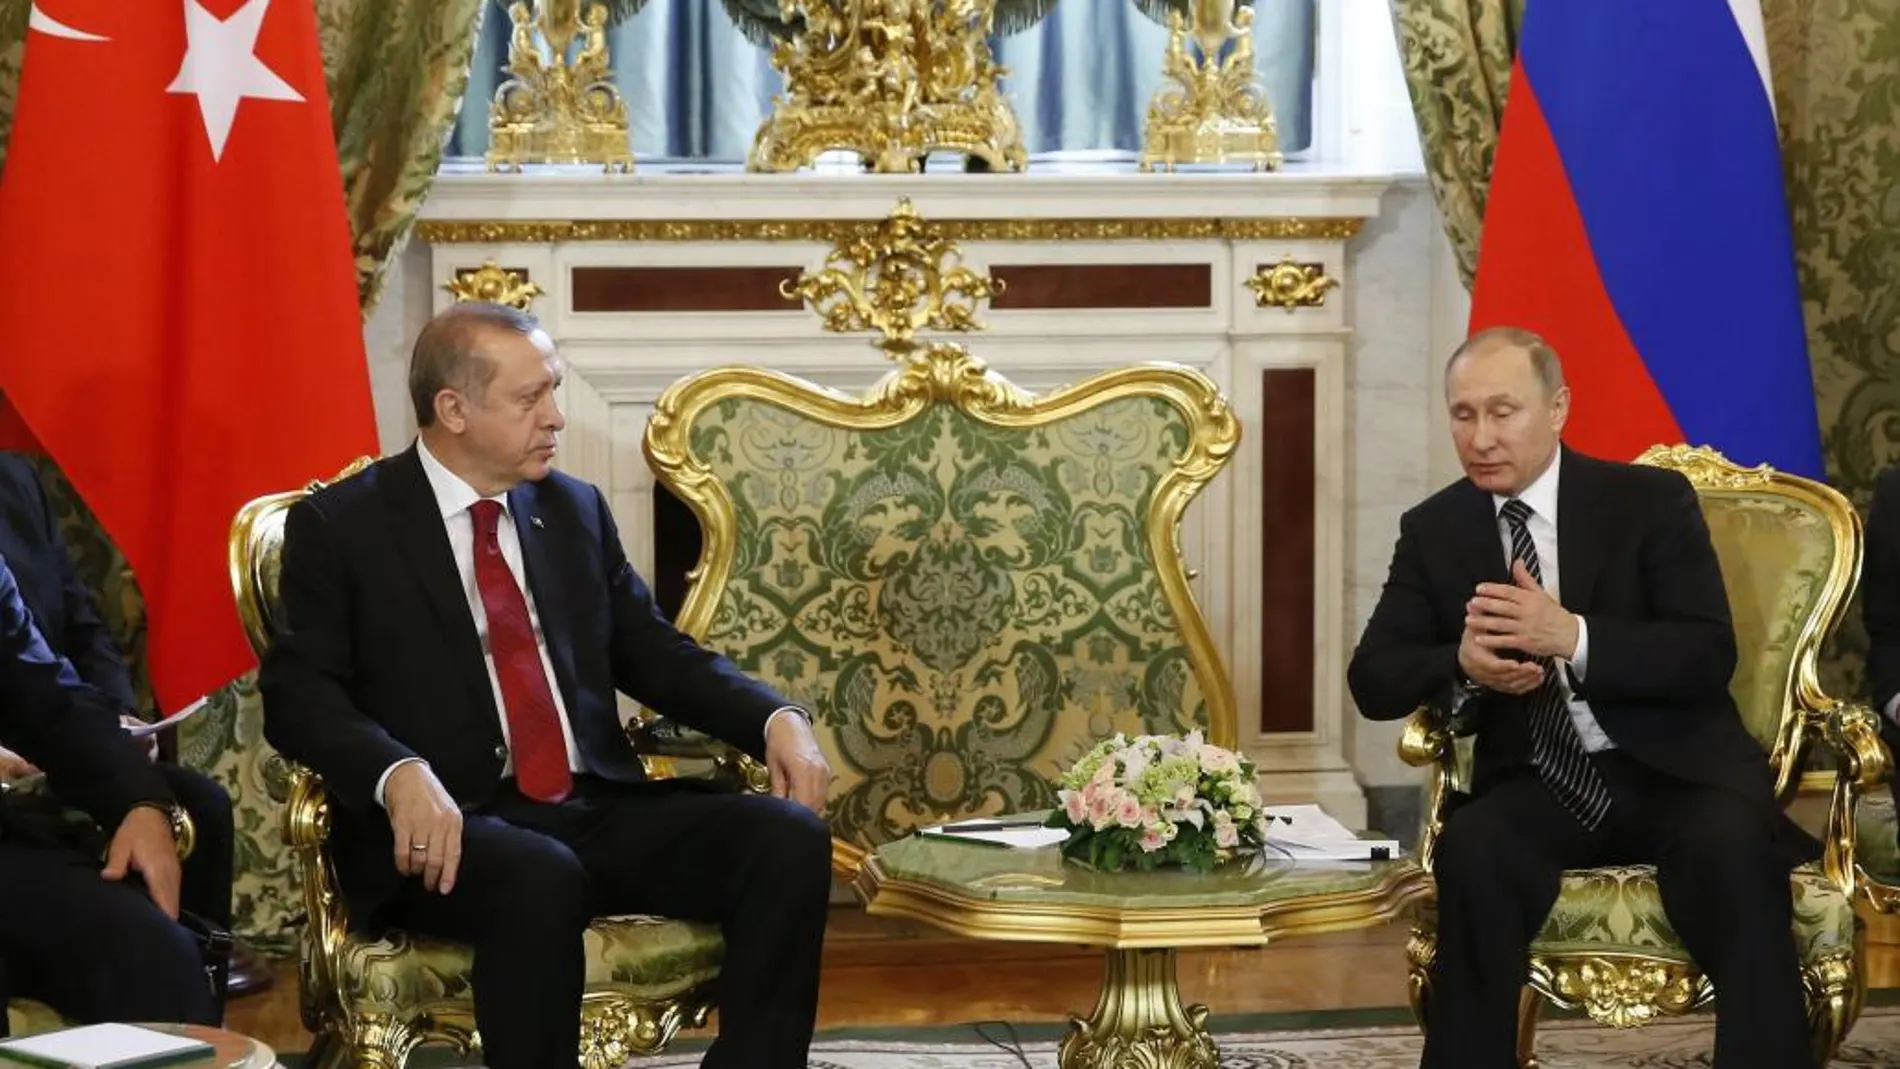 El presidente ruso, Vladímir Putin, y su homólogo turco, Recep Tayyip Erdogan, conversan durante su reunión en el Kremlin